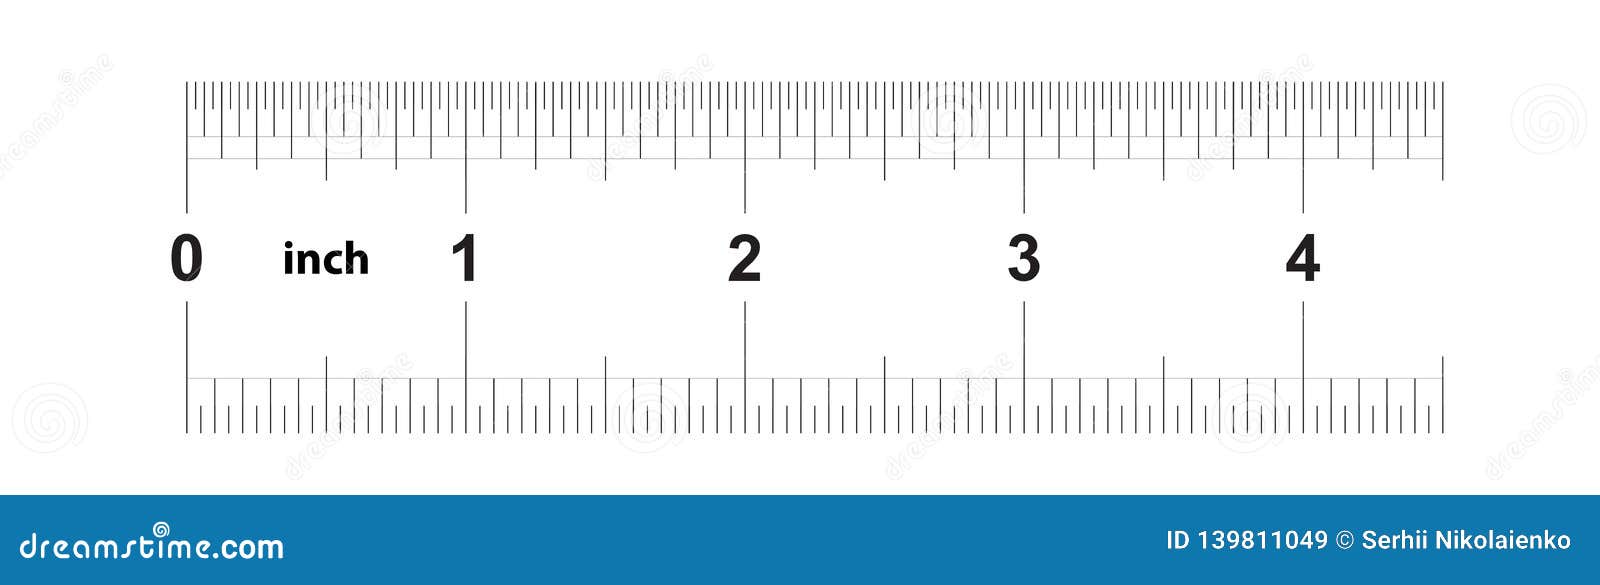 Ruler 200 Cm. Precise Measuring Tool. Ruler Scale 2,0 Meter. Ruler Grid